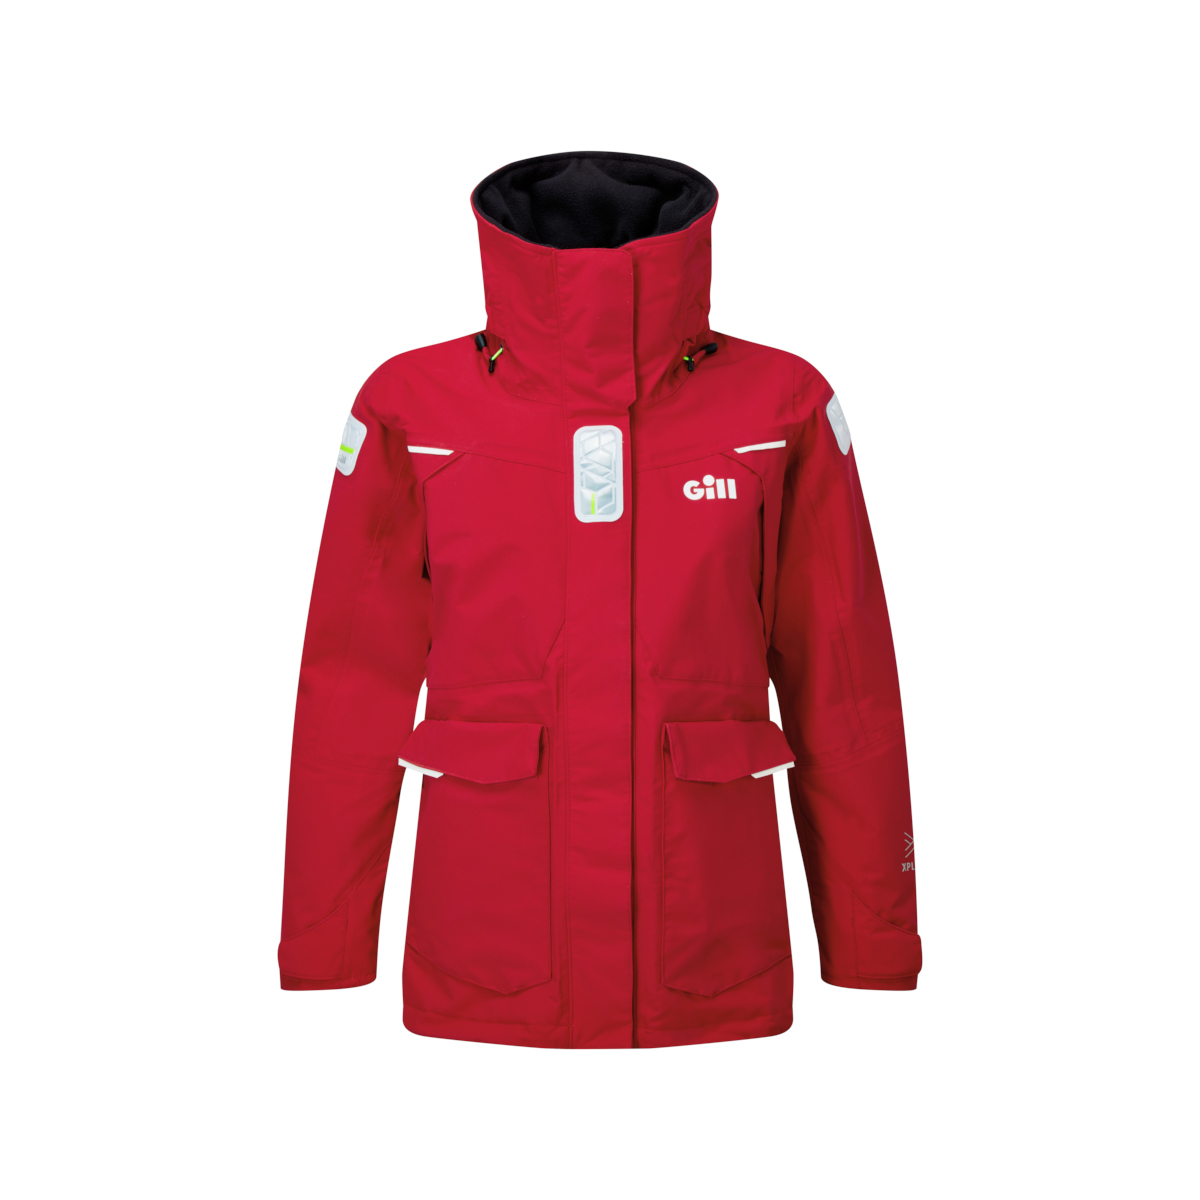 Gill OS25 veste de voile offshore femme rouge, taille 10